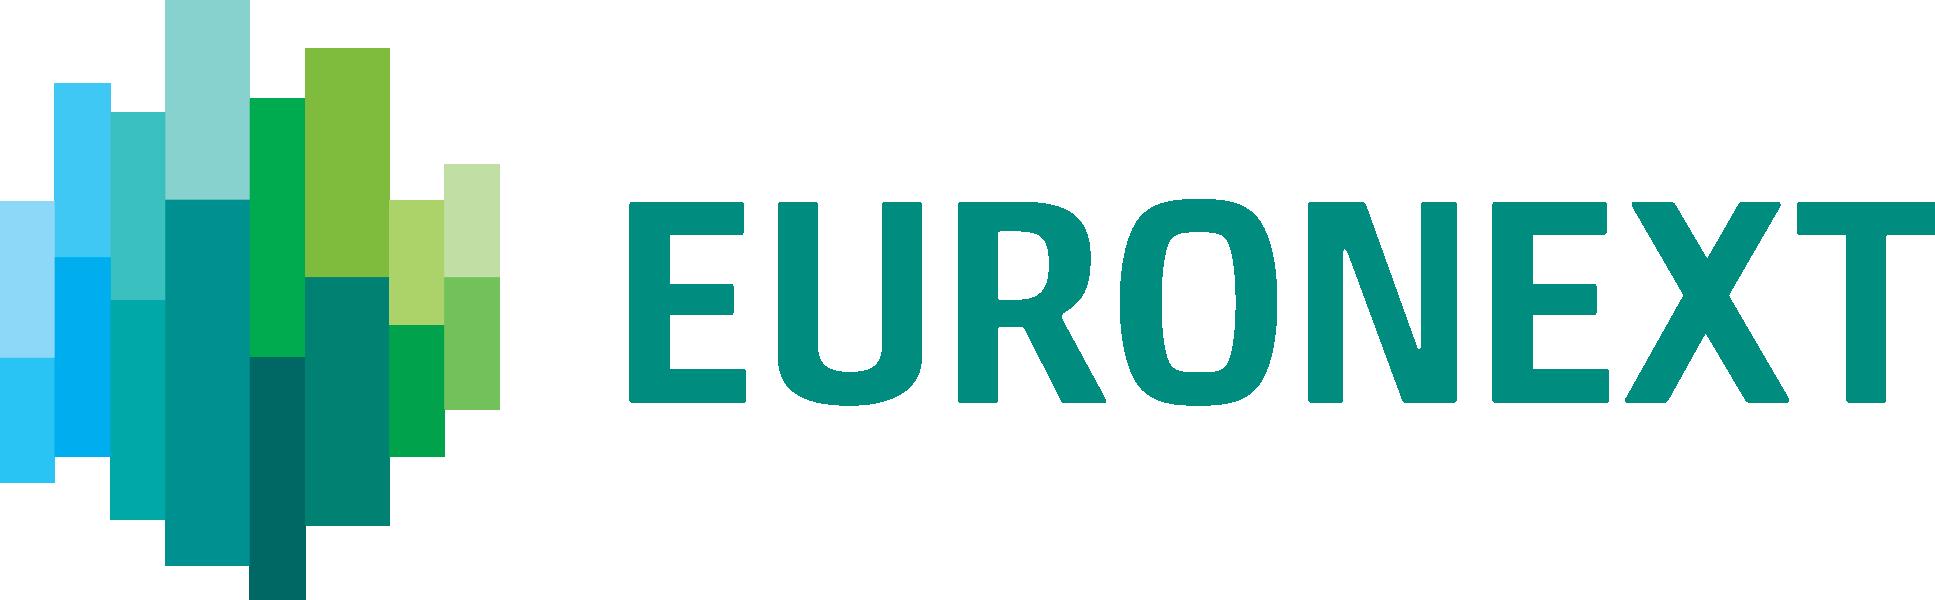 NYSE Euronext logo image: NYS